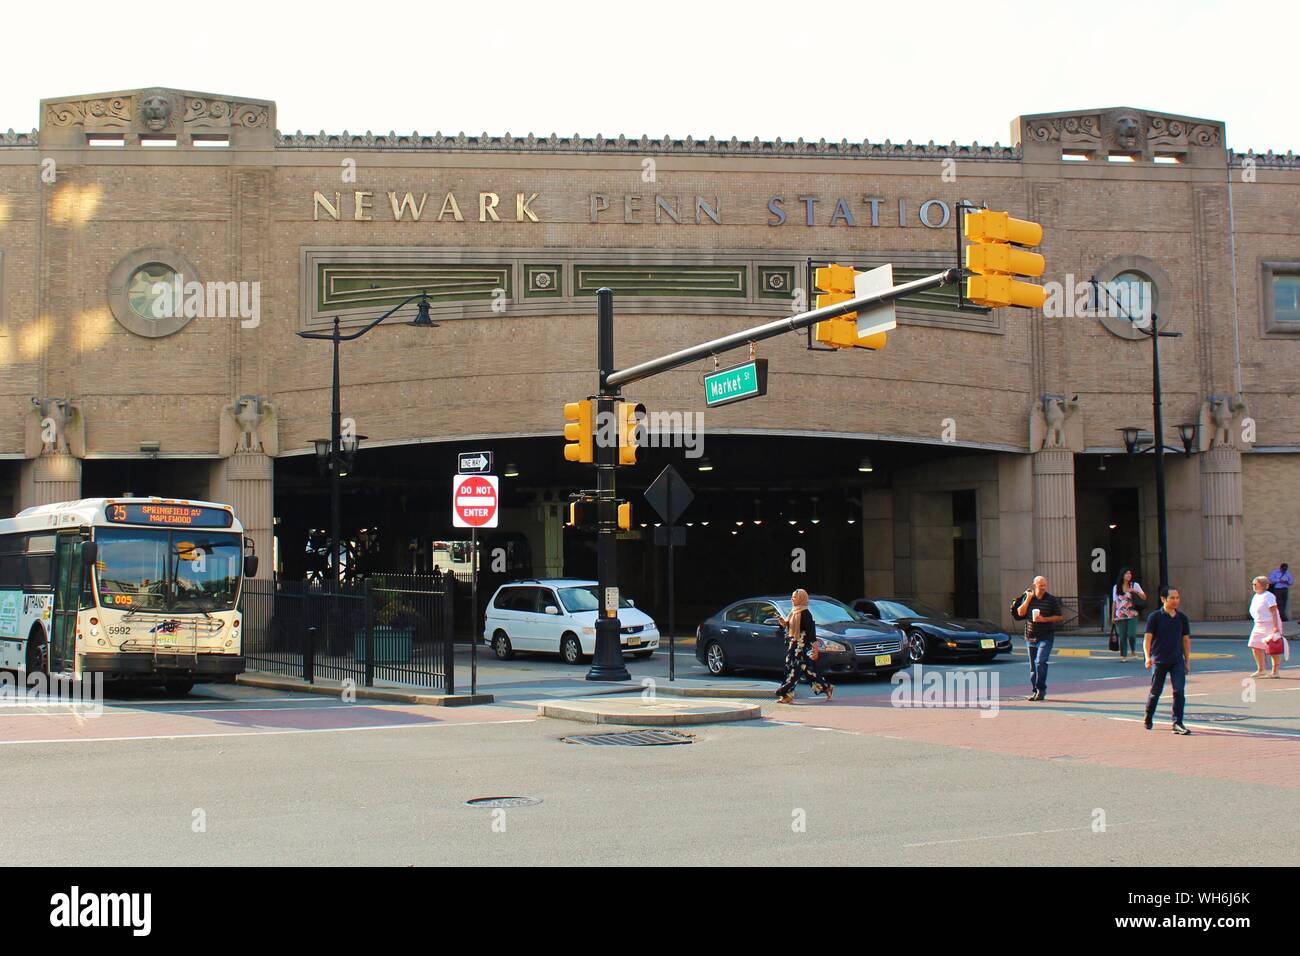 Newark, New Jersey - 15. August 2019: Blick auf die Market Street dicht befahrene Newark Penn (Pennsylvania) Bus und Bahnhof. Stockfoto